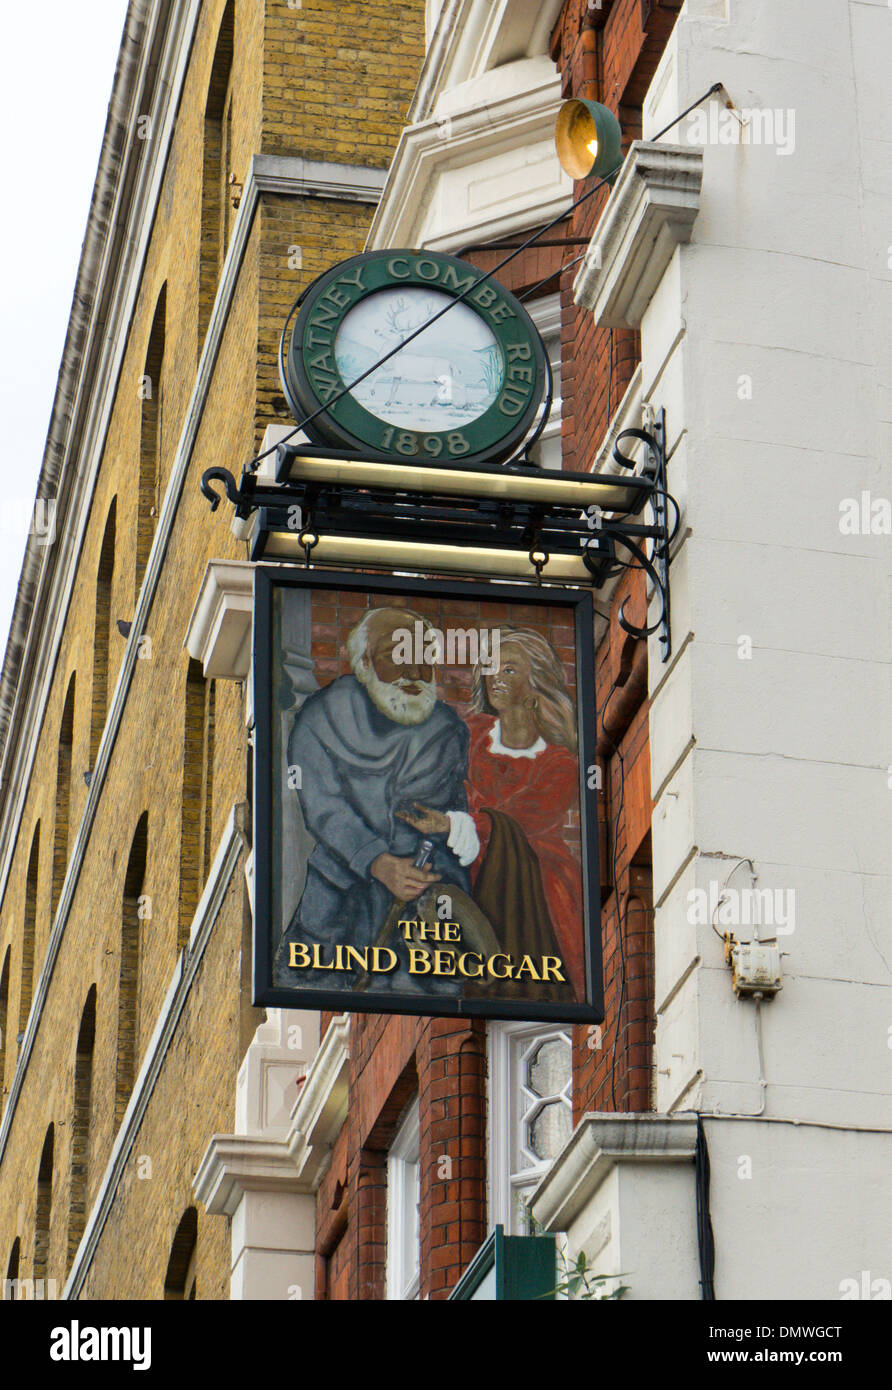 Signe pour le mendiant aveugle pub à Whitechapel Road, Londres. Banque D'Images